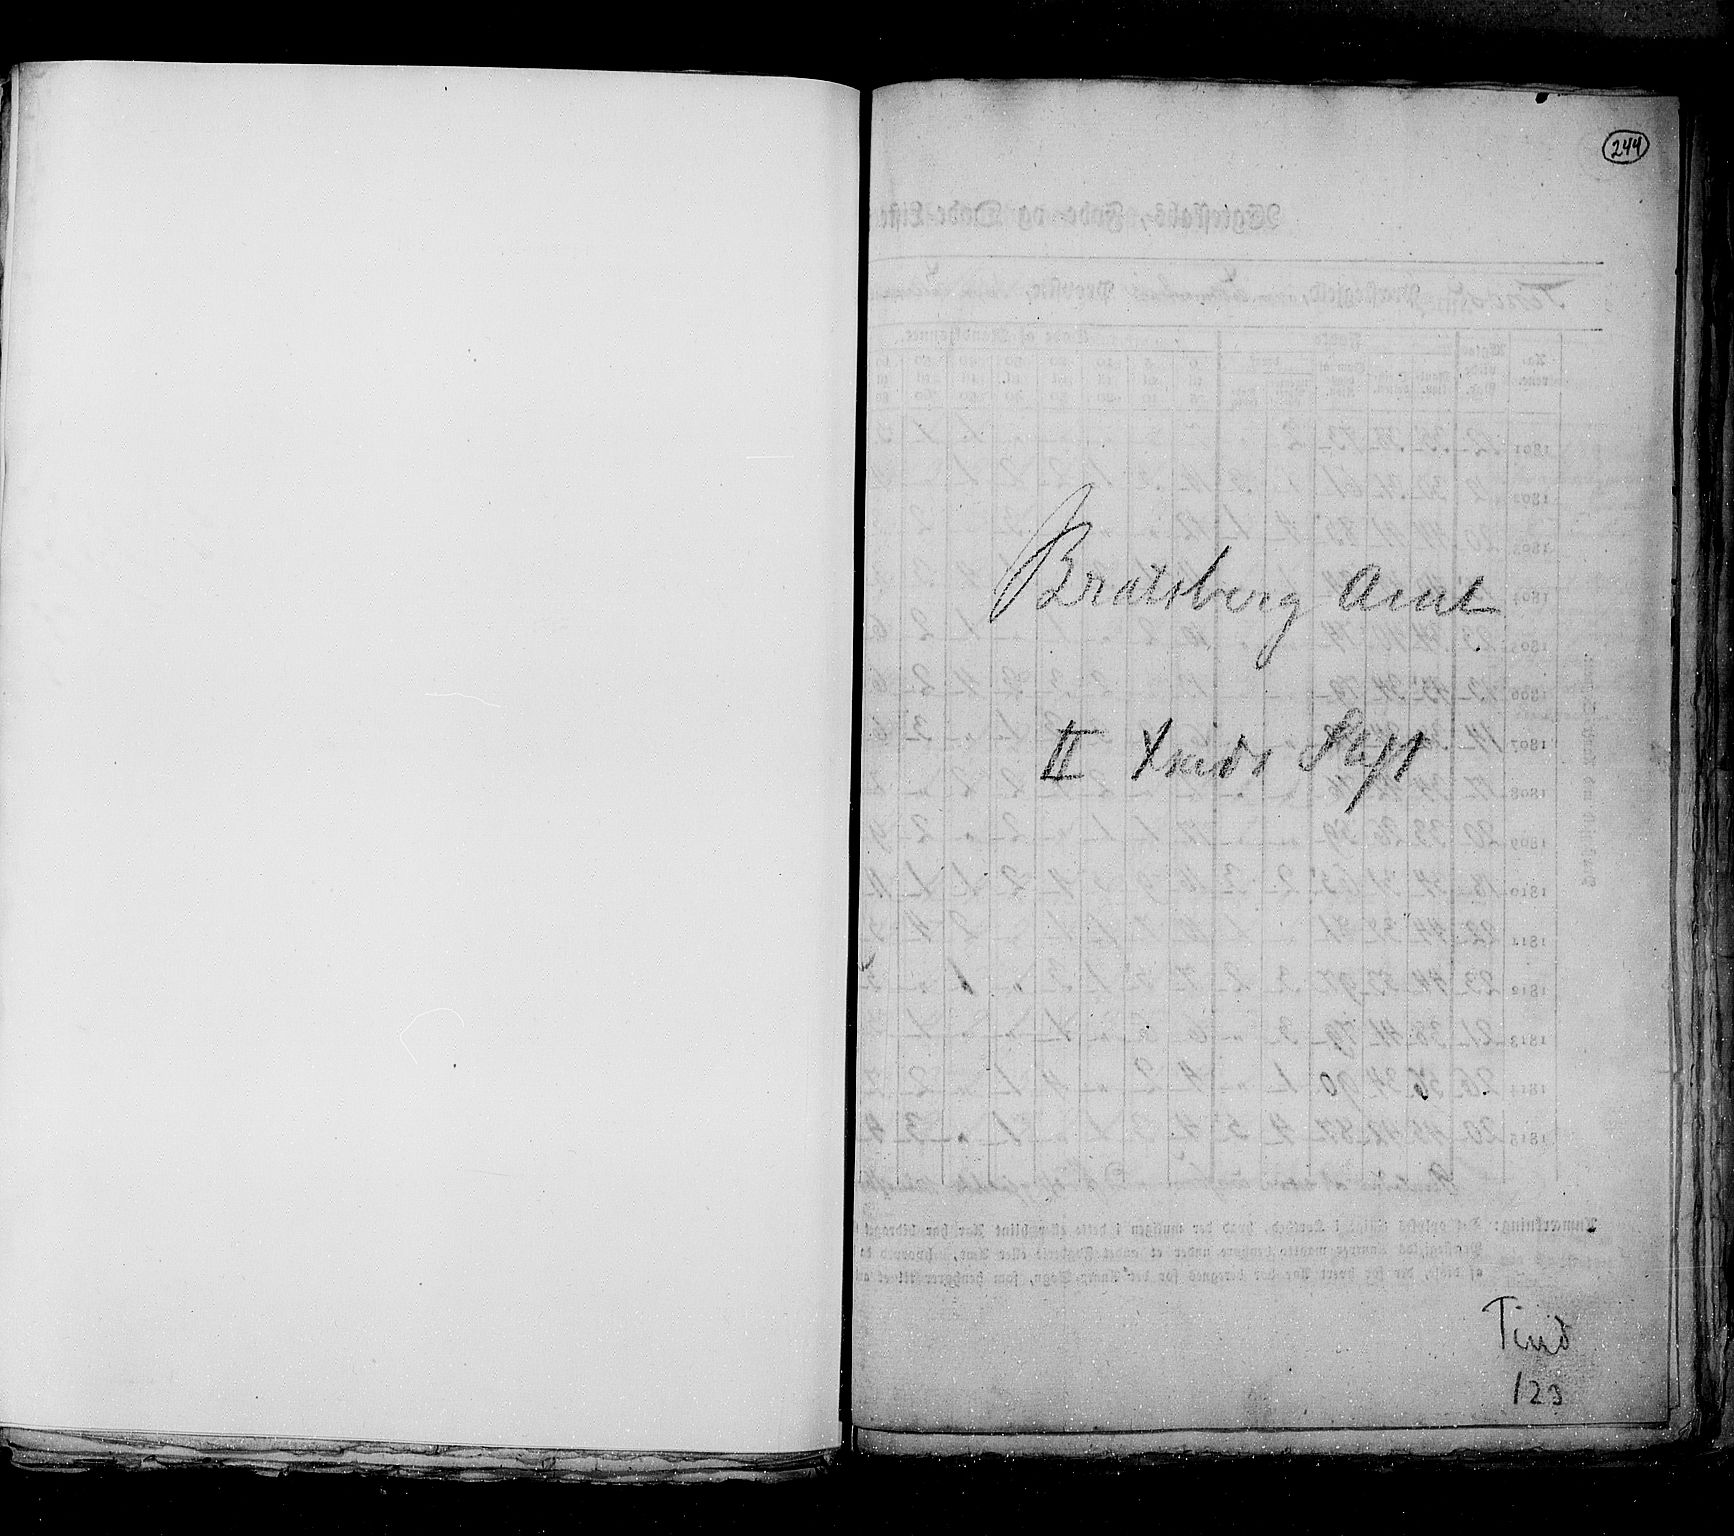 RA, Folketellingen 1815, bind 6: Folkemengdens bevegelse i Akershus stift og Kristiansand stift, 1815, s. 244